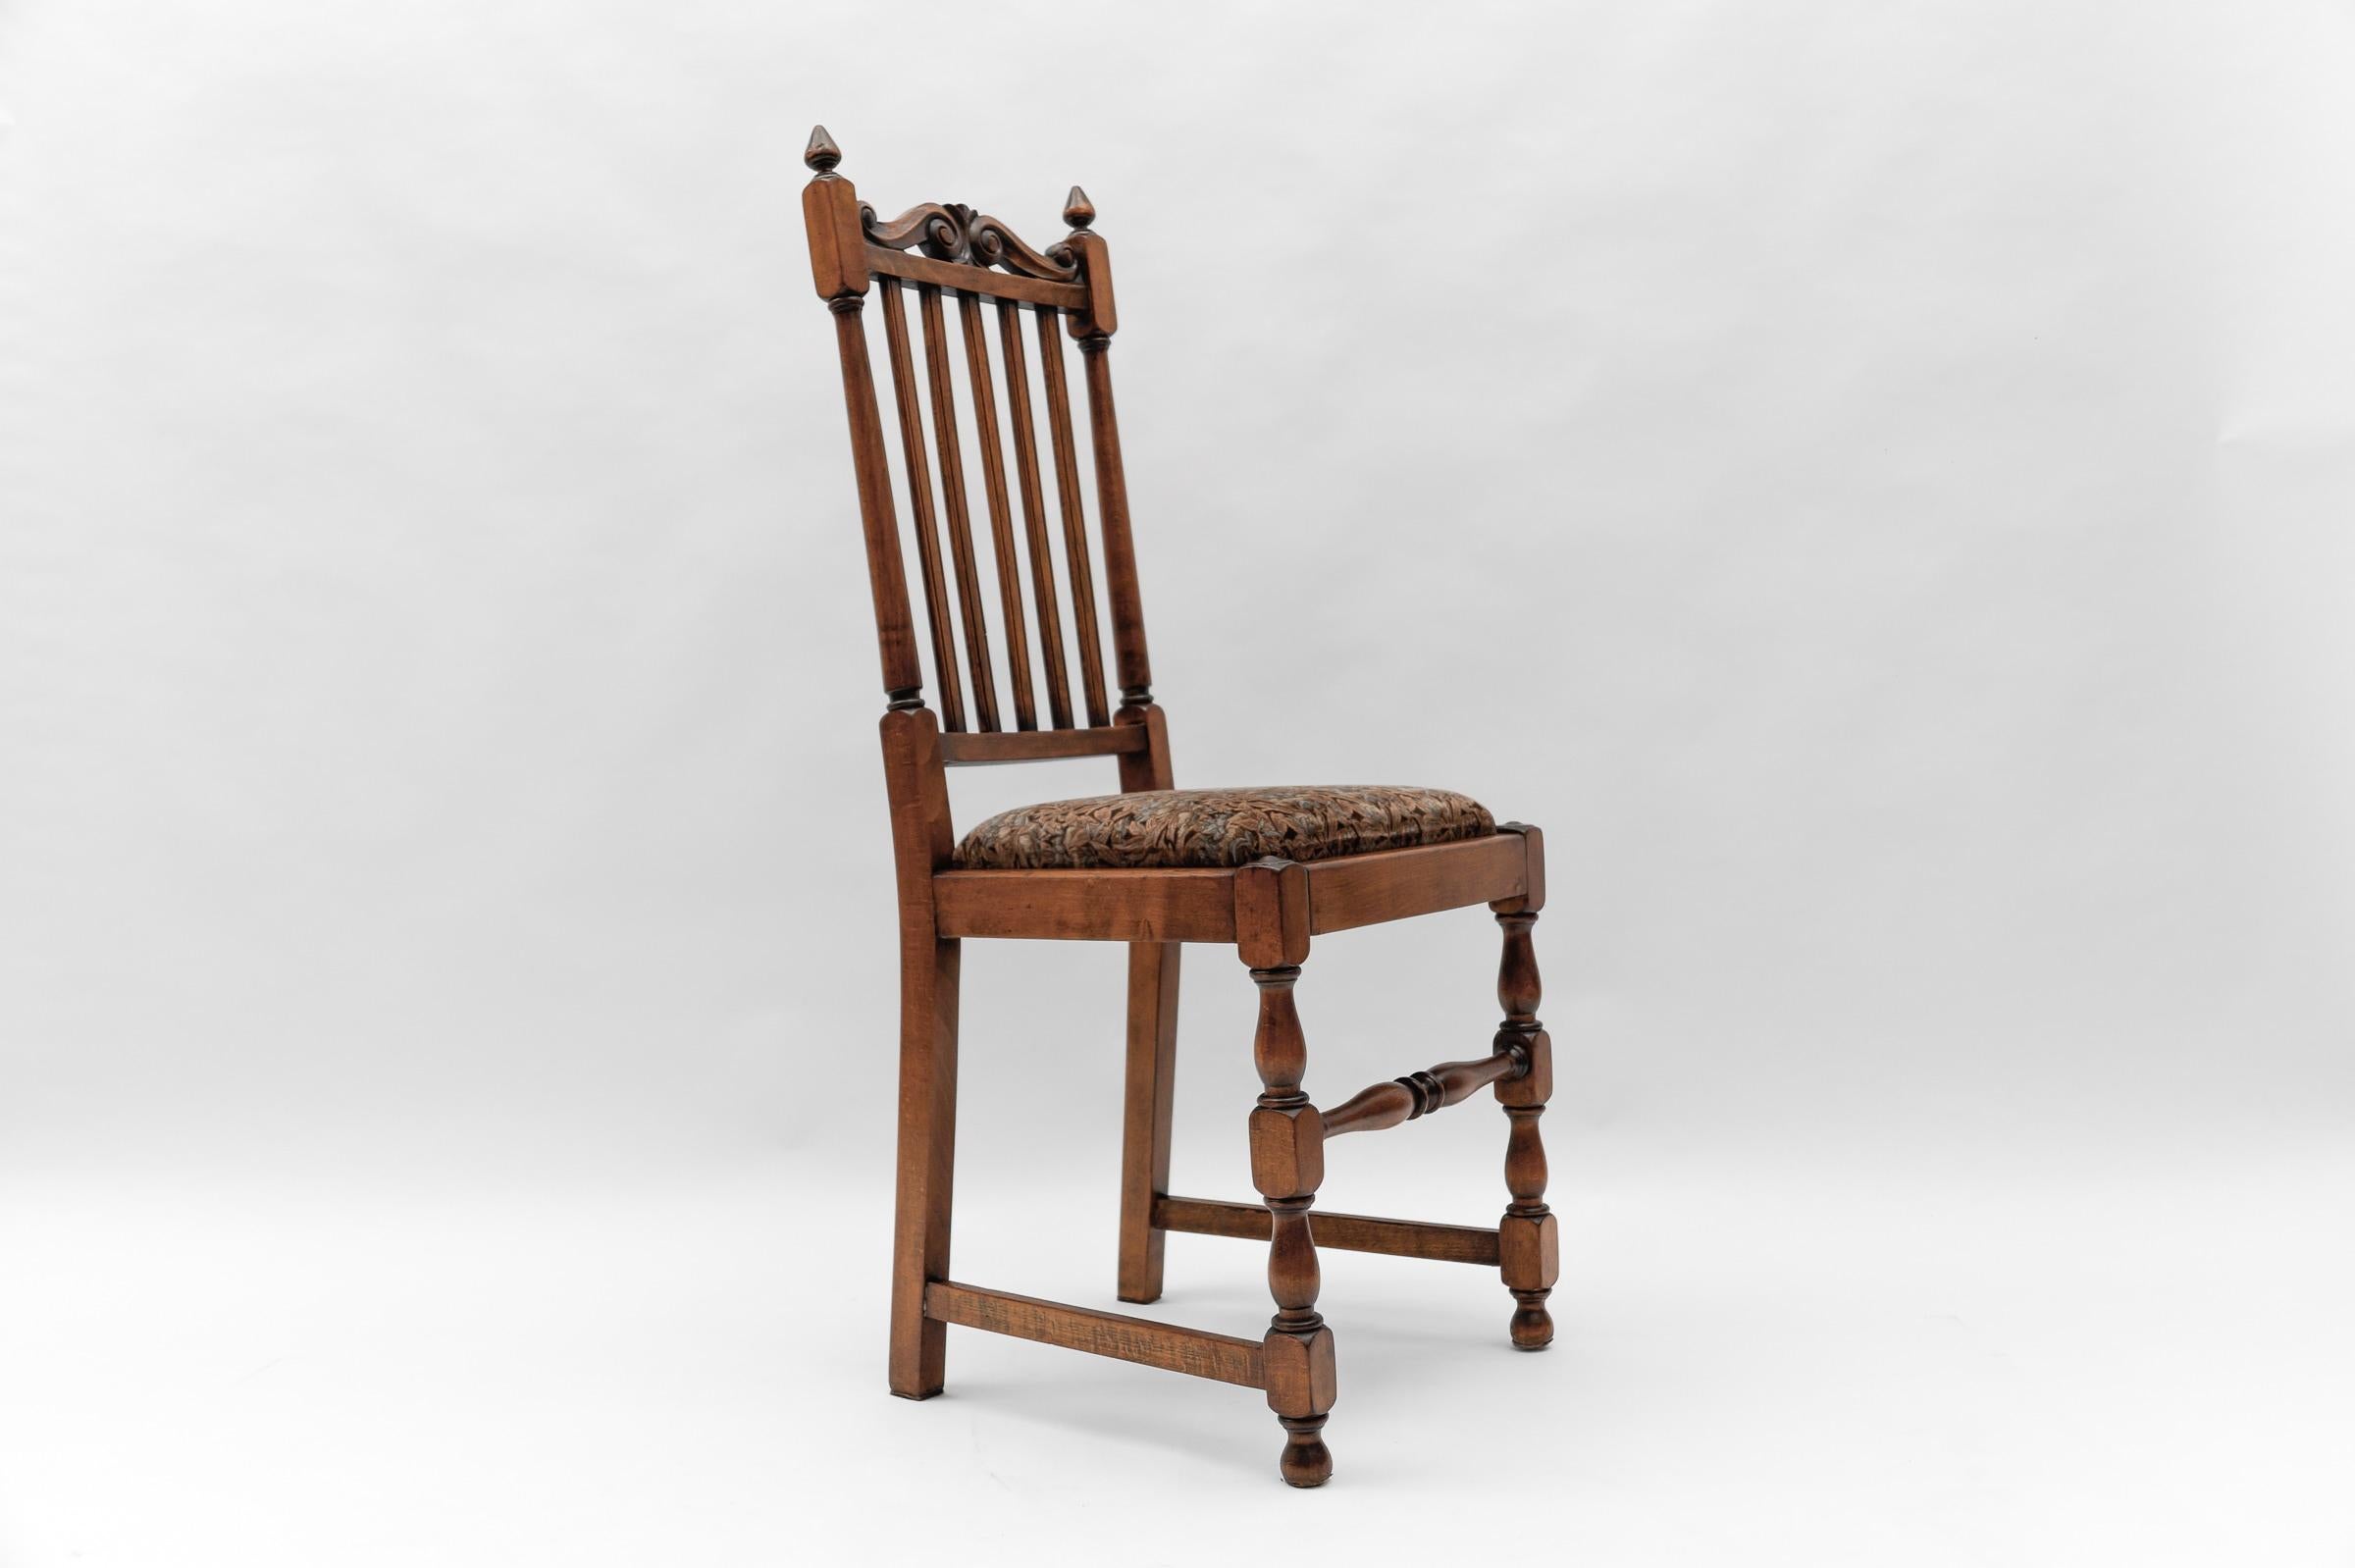 Austrian Antique Belle Époque Wooden Chair, 1900s Austria For Sale